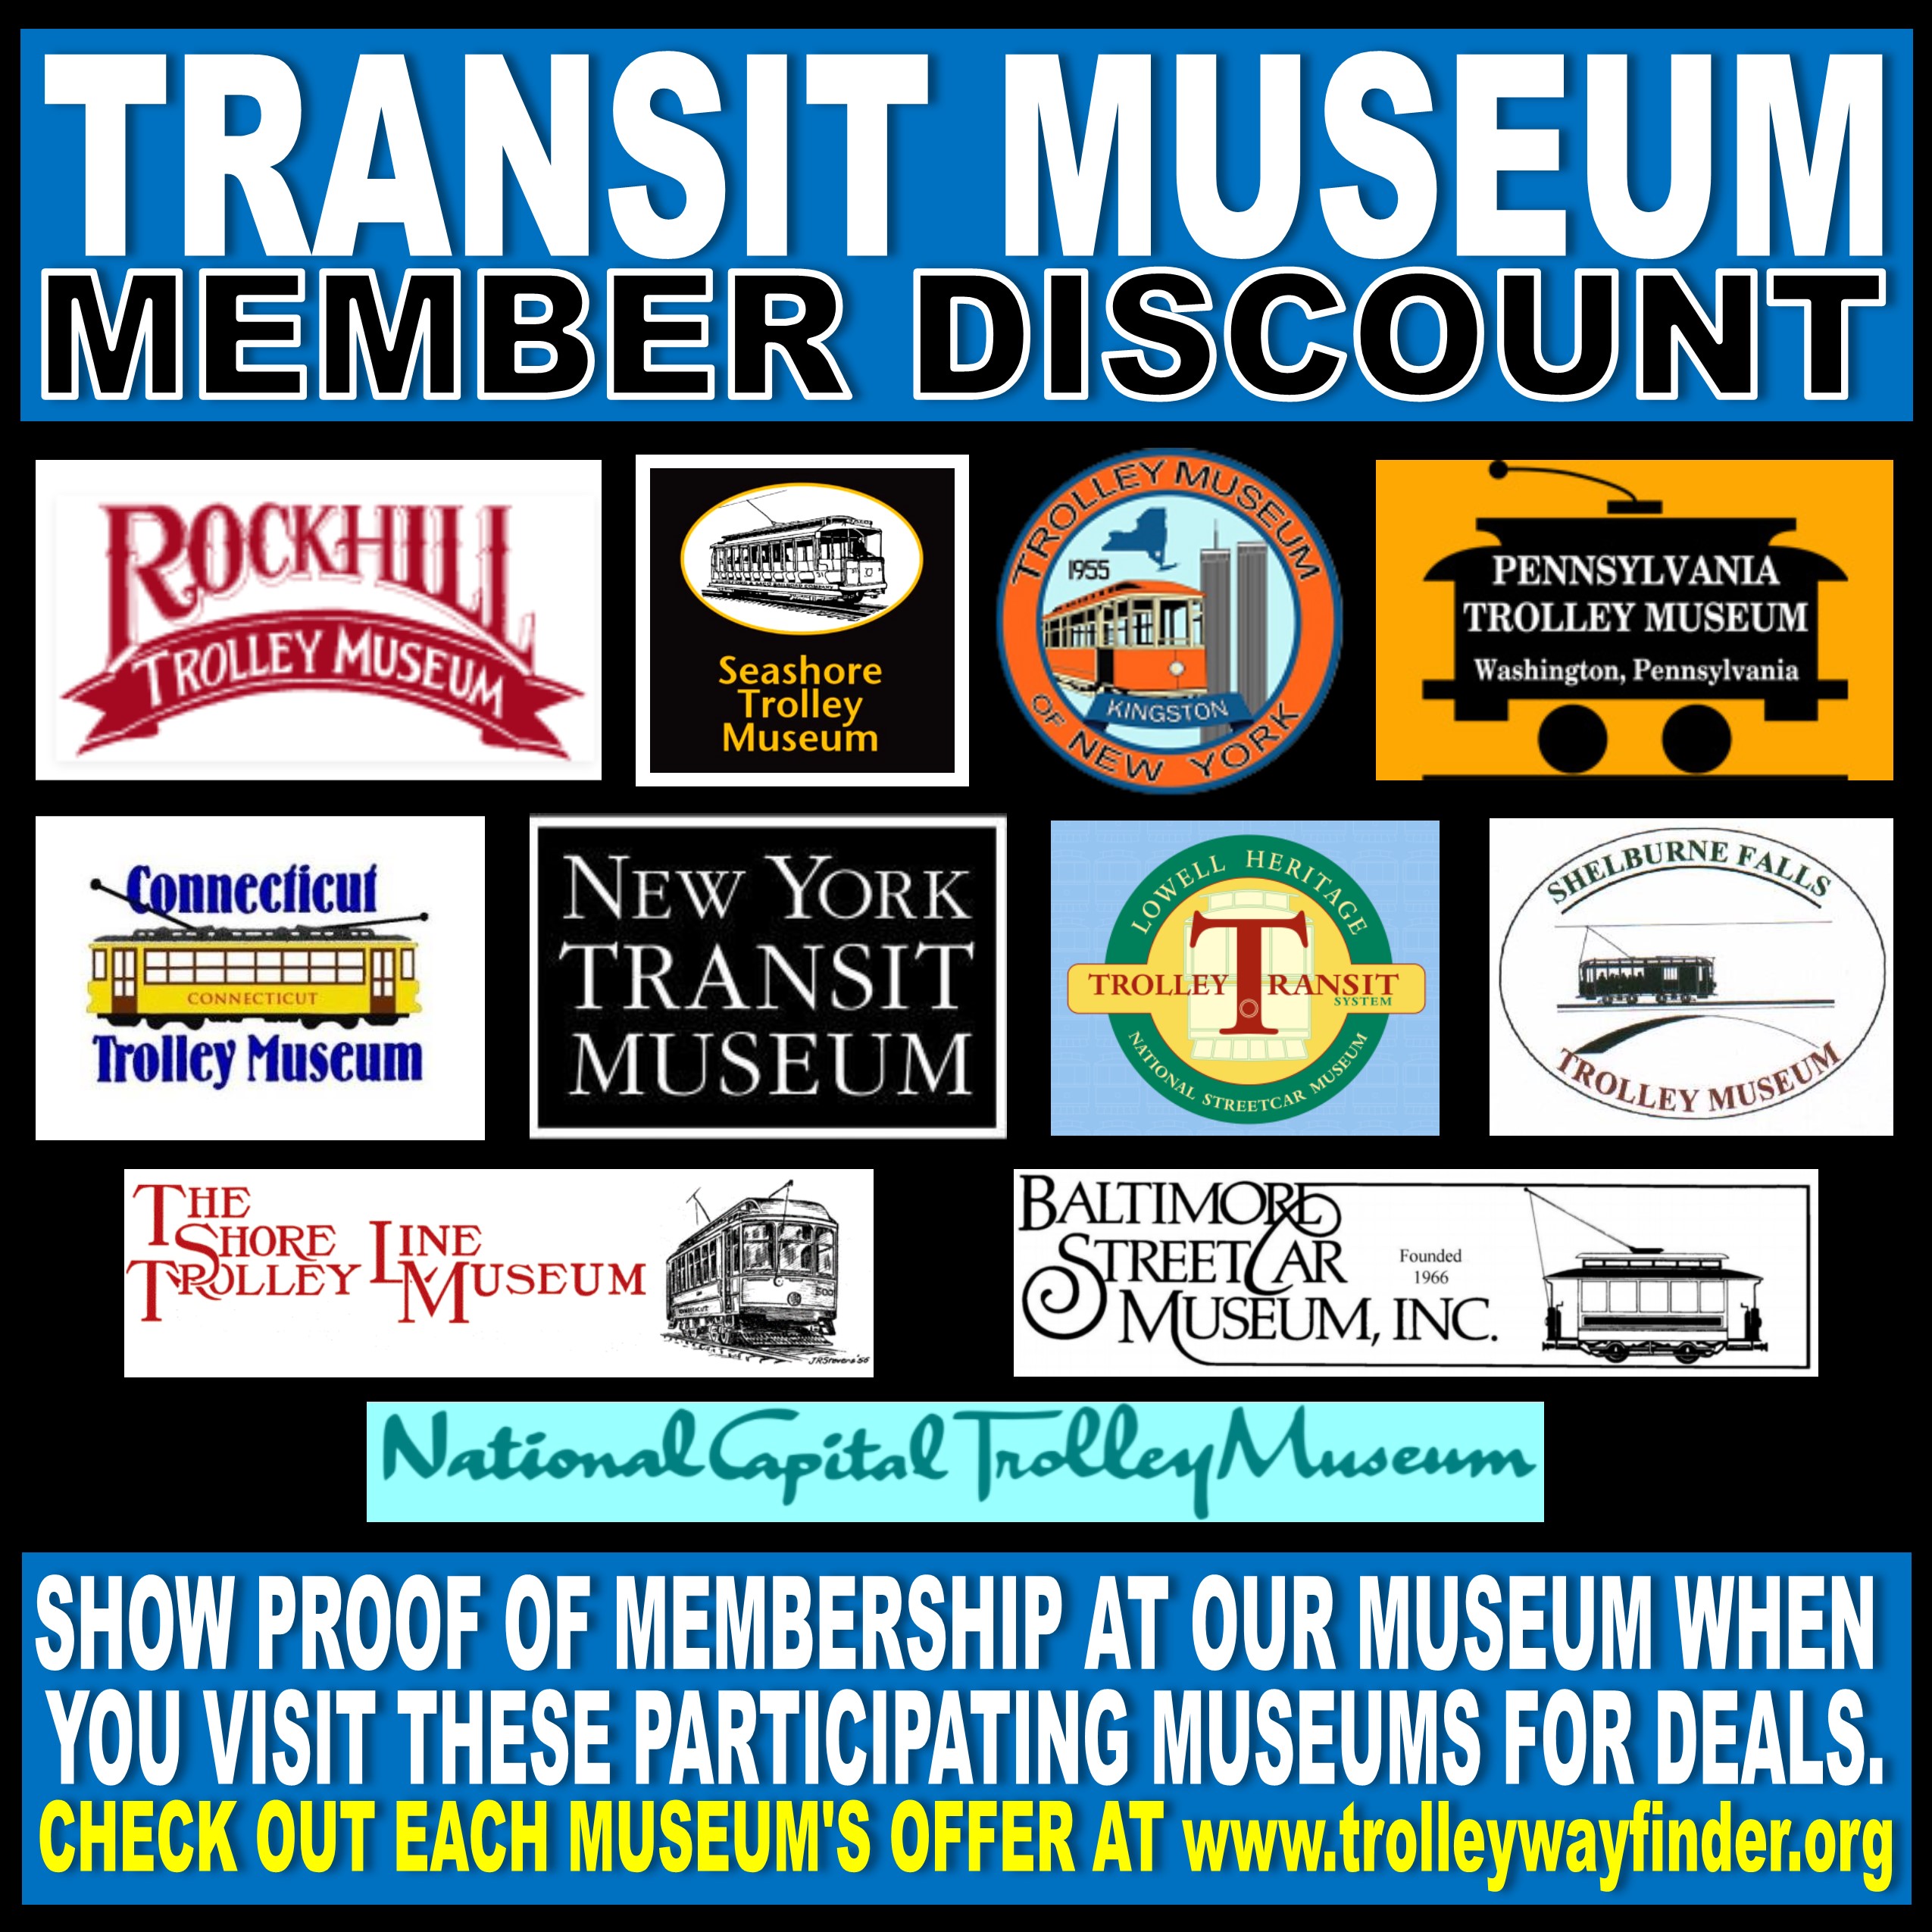 Trolley Wayfinder - Trolley Museum member discounts